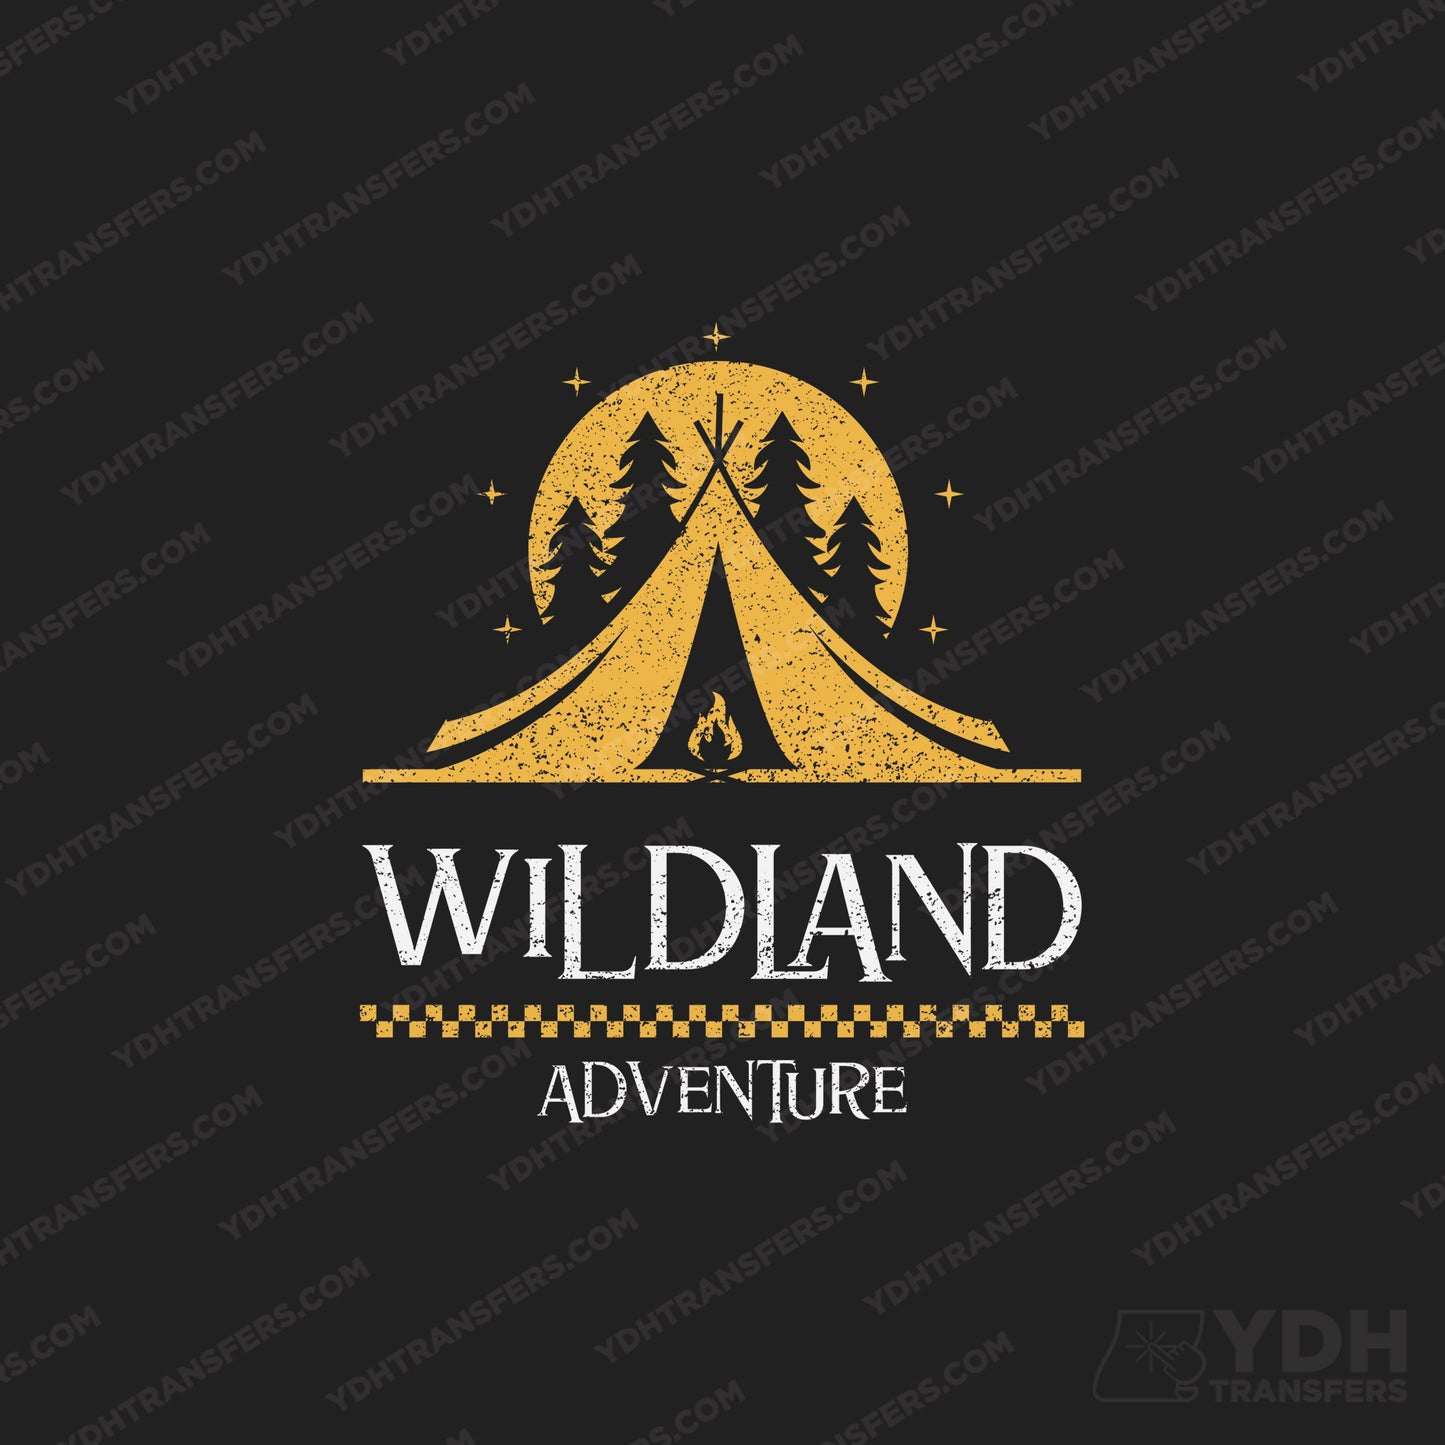 Wildland Adventure Full Color Transfer